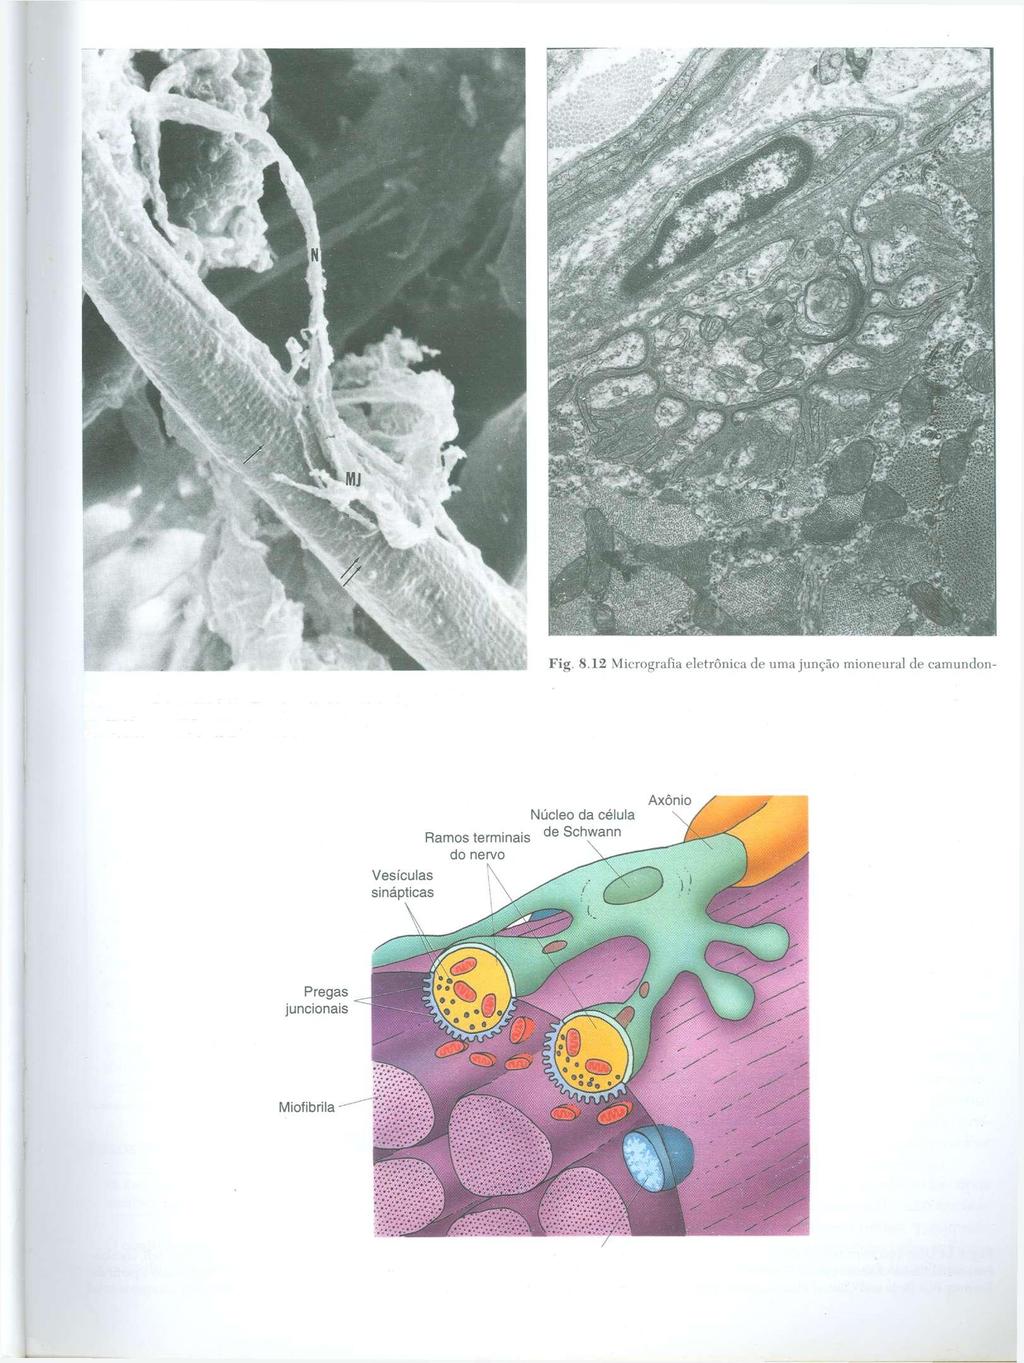 go. (De Feczko D, Klueber KM: Cytoarchitecture of muscle in a genetic Fig. 8.11 Micrografia eletrônica de varredura de uma junção mioneural da model of murine diabetes. Am J Anat 182:224-240, 1988.